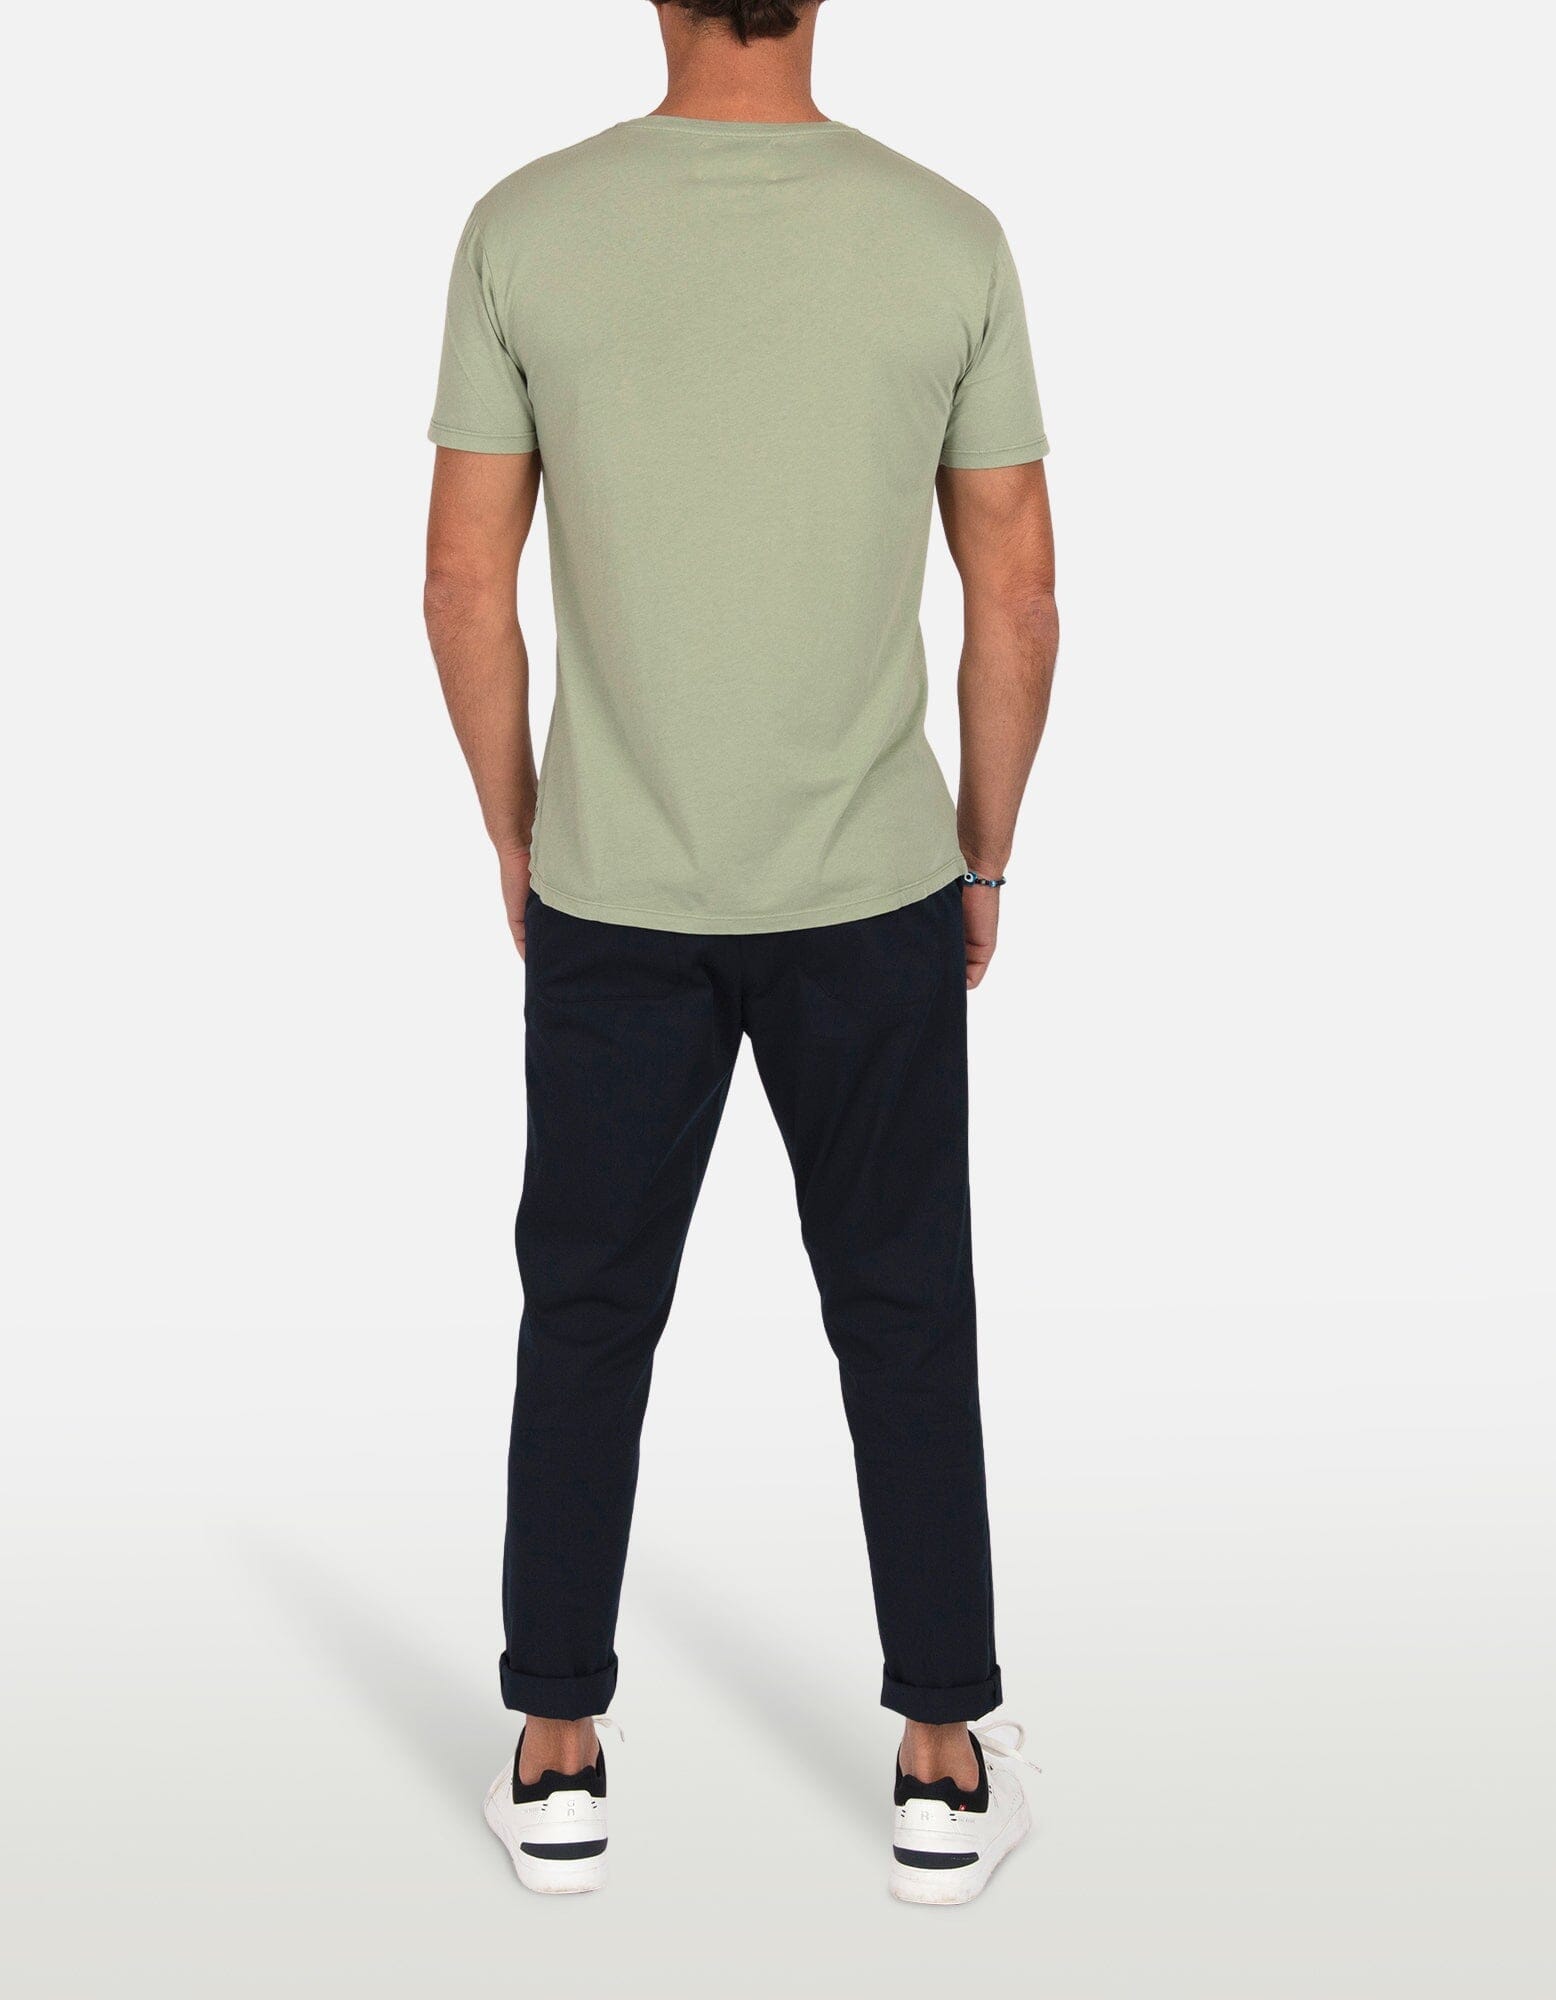 Sun - 06. Green Tea T-Shirts - Sun MACKEENE 